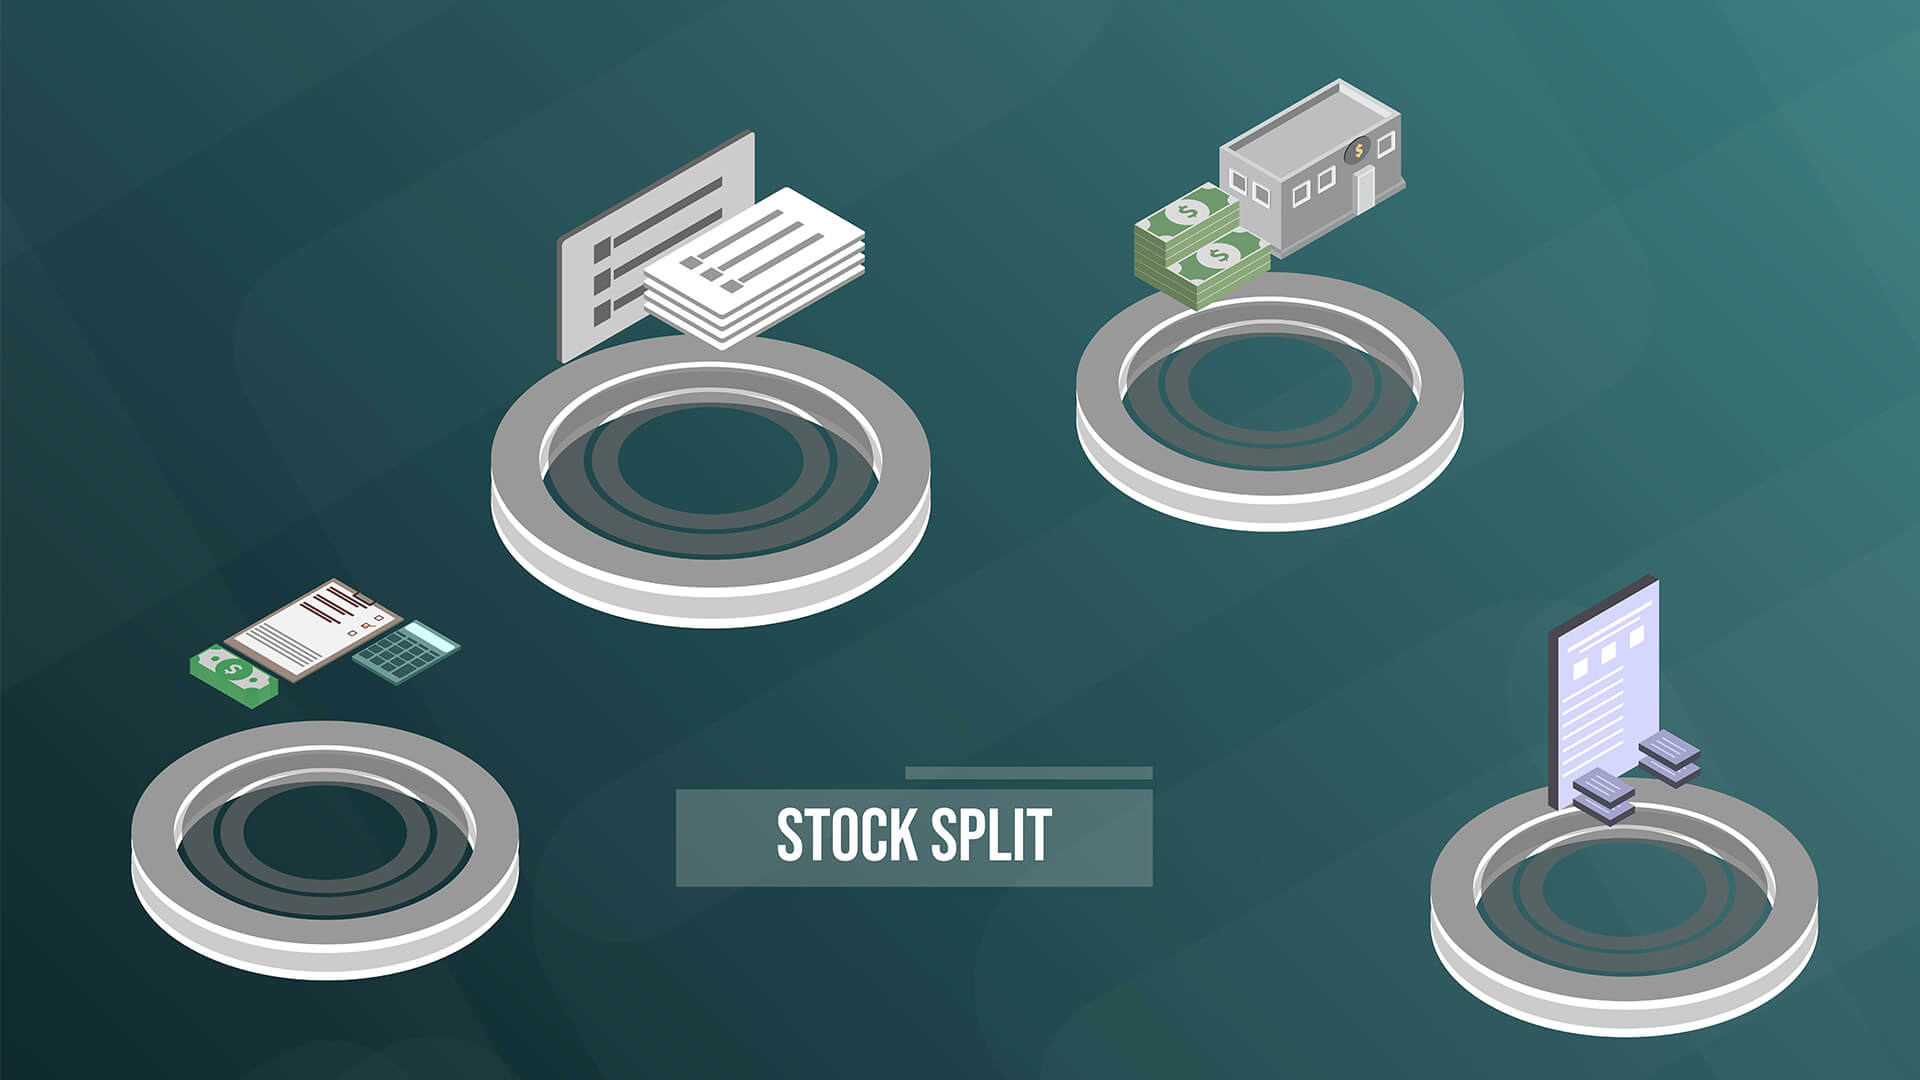 Stock split